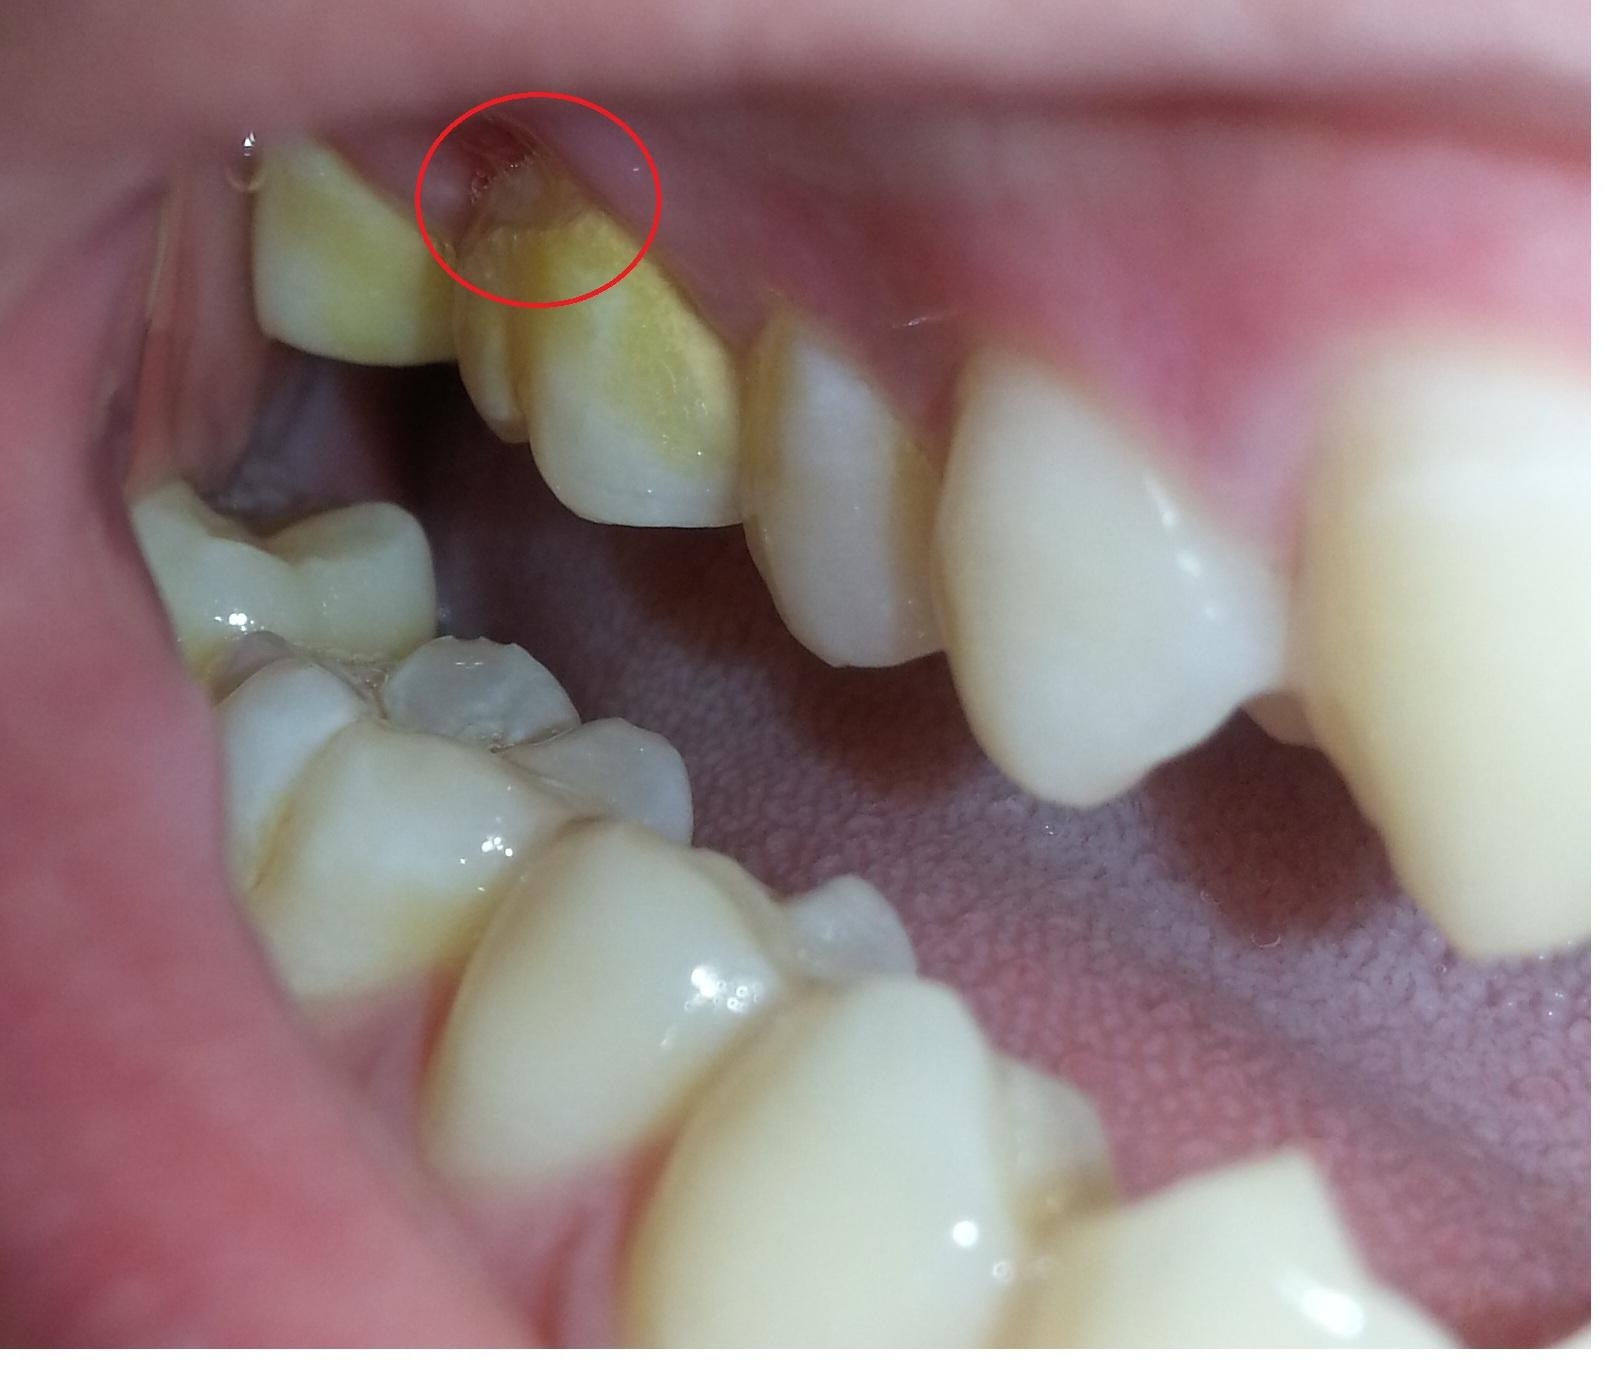 牙科 蔡璧原醫師: 我曾經咬到硬物, 牙齒有點痛該怎麼辦? 談裂齒症候群